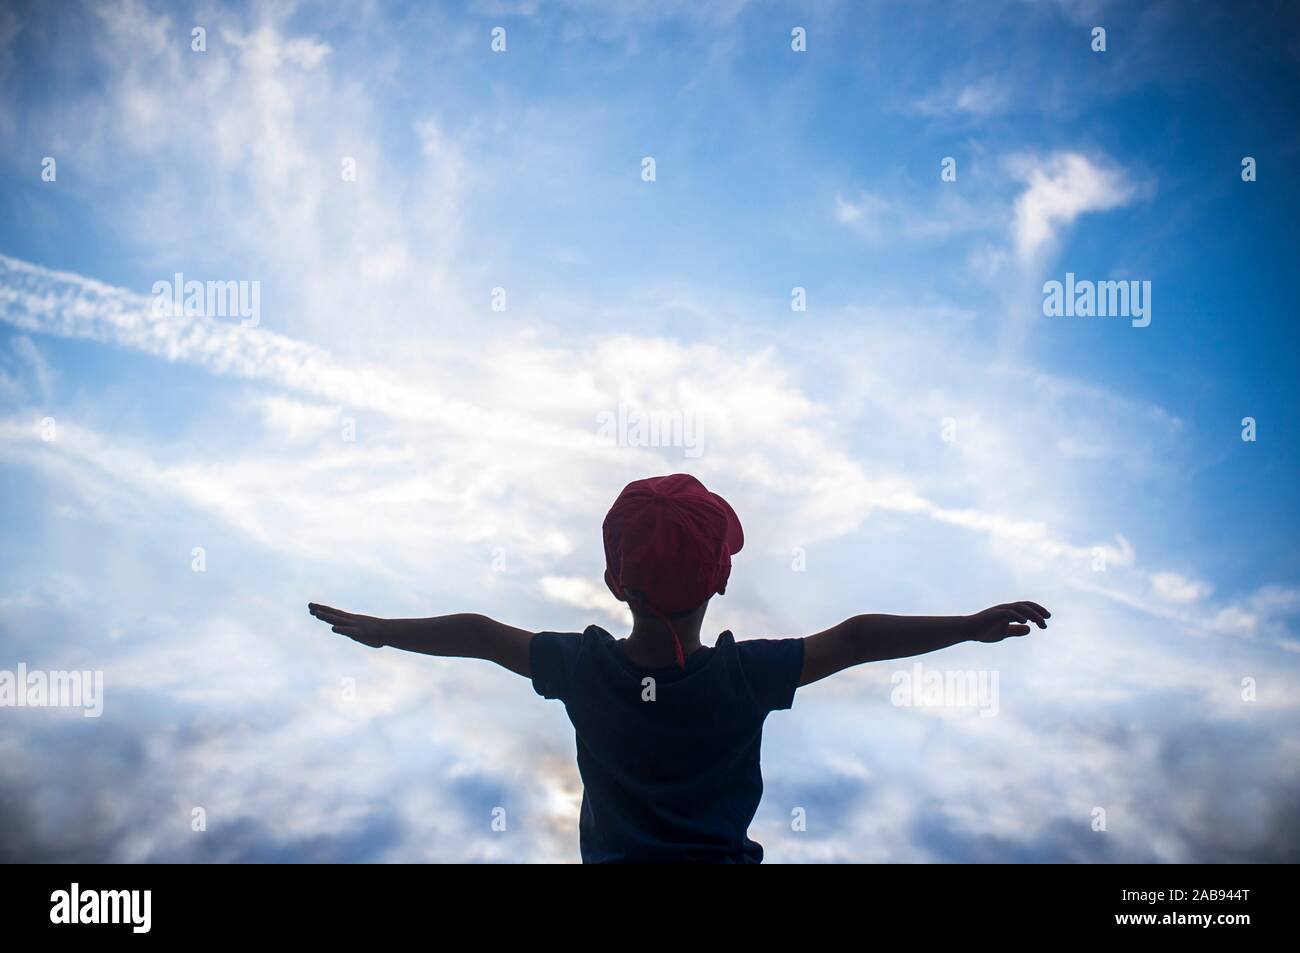 4 Jahre alter Junge vorgibt, über bewölkter Himmel zu fliegen. Kinder Phantasie Konzept zu fördern. Stockfoto